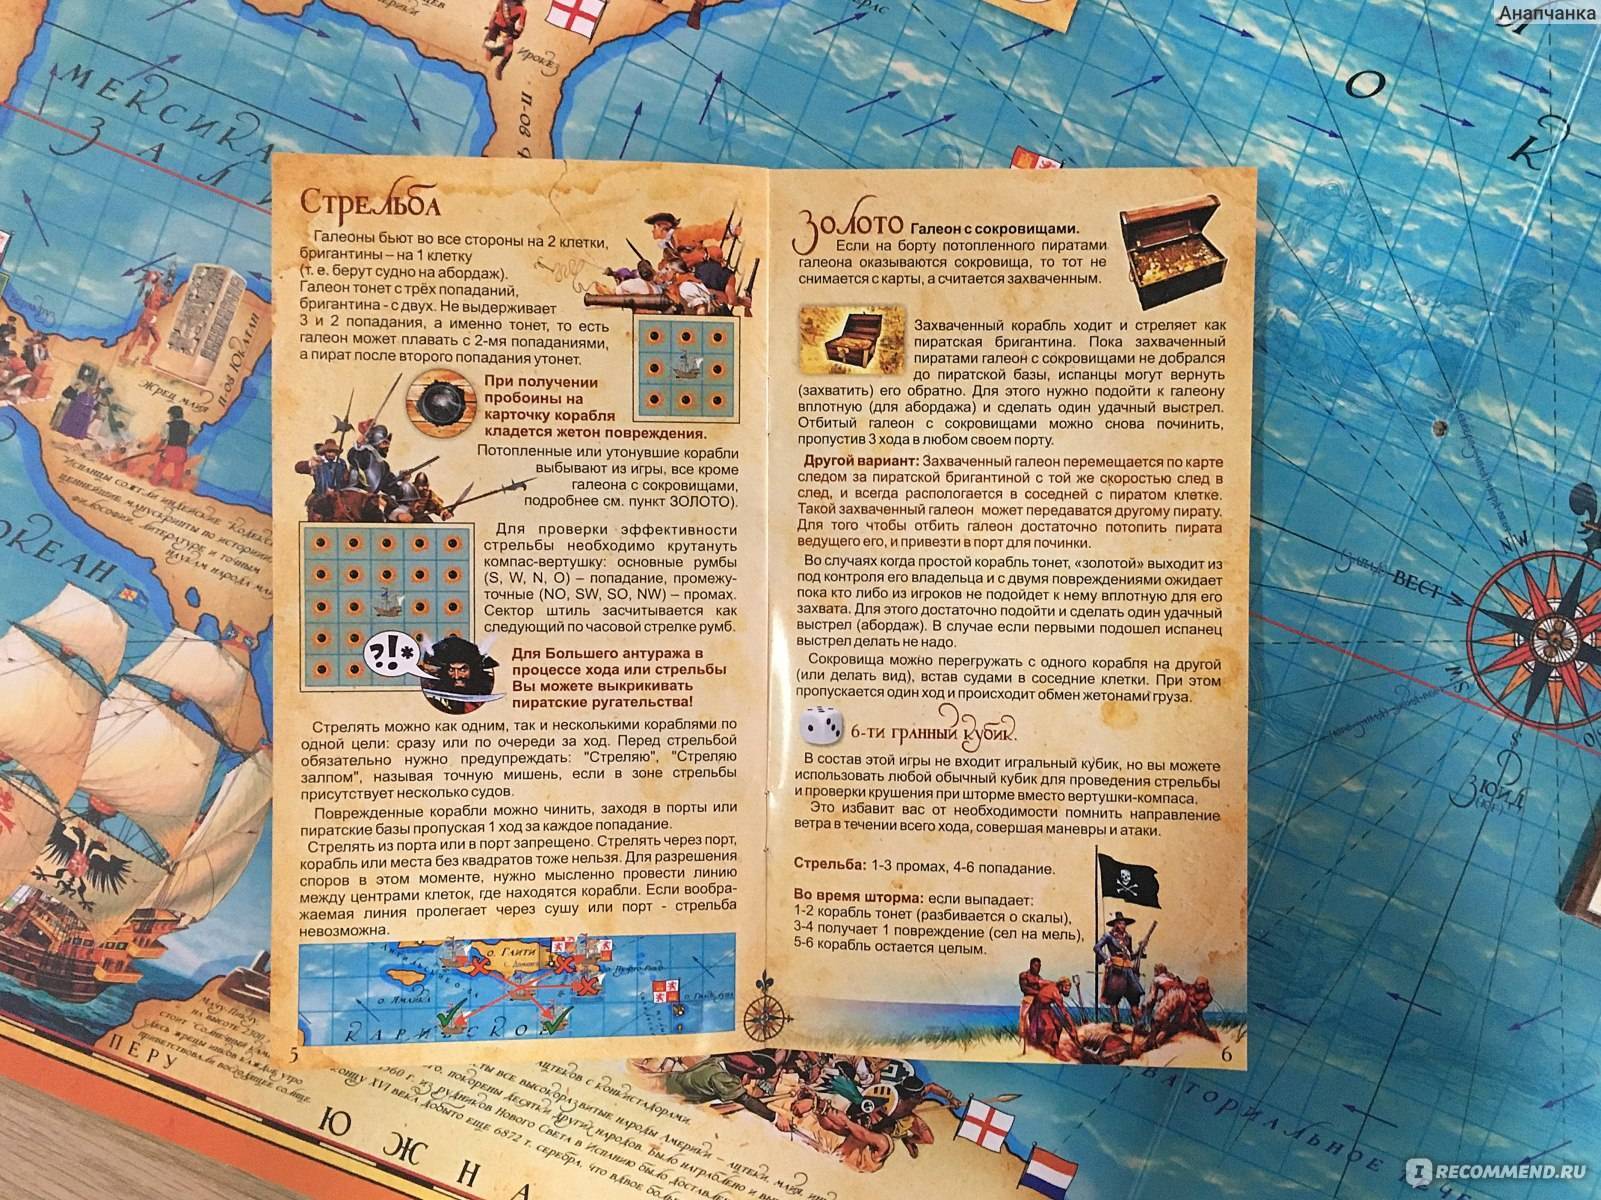 Музыкальная сказка-экспромт в пиратском стиле для детей "Если любишь ты моря"